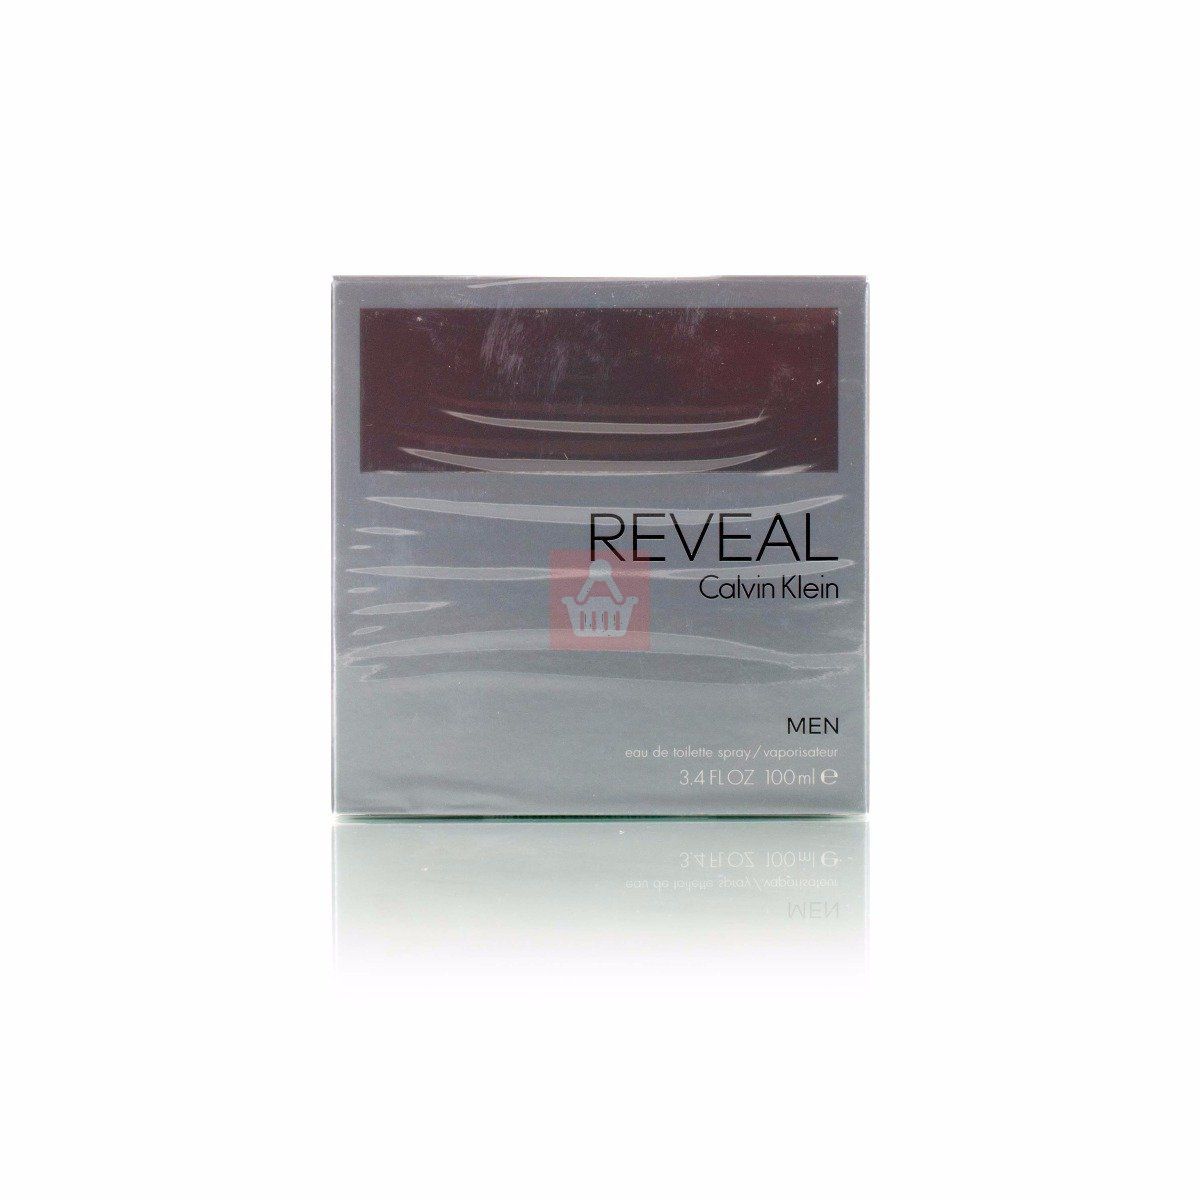 CALVIN KLEIN REVEAL For Men 3.4oz EDT - 100ml - Spray (BS) Perfume